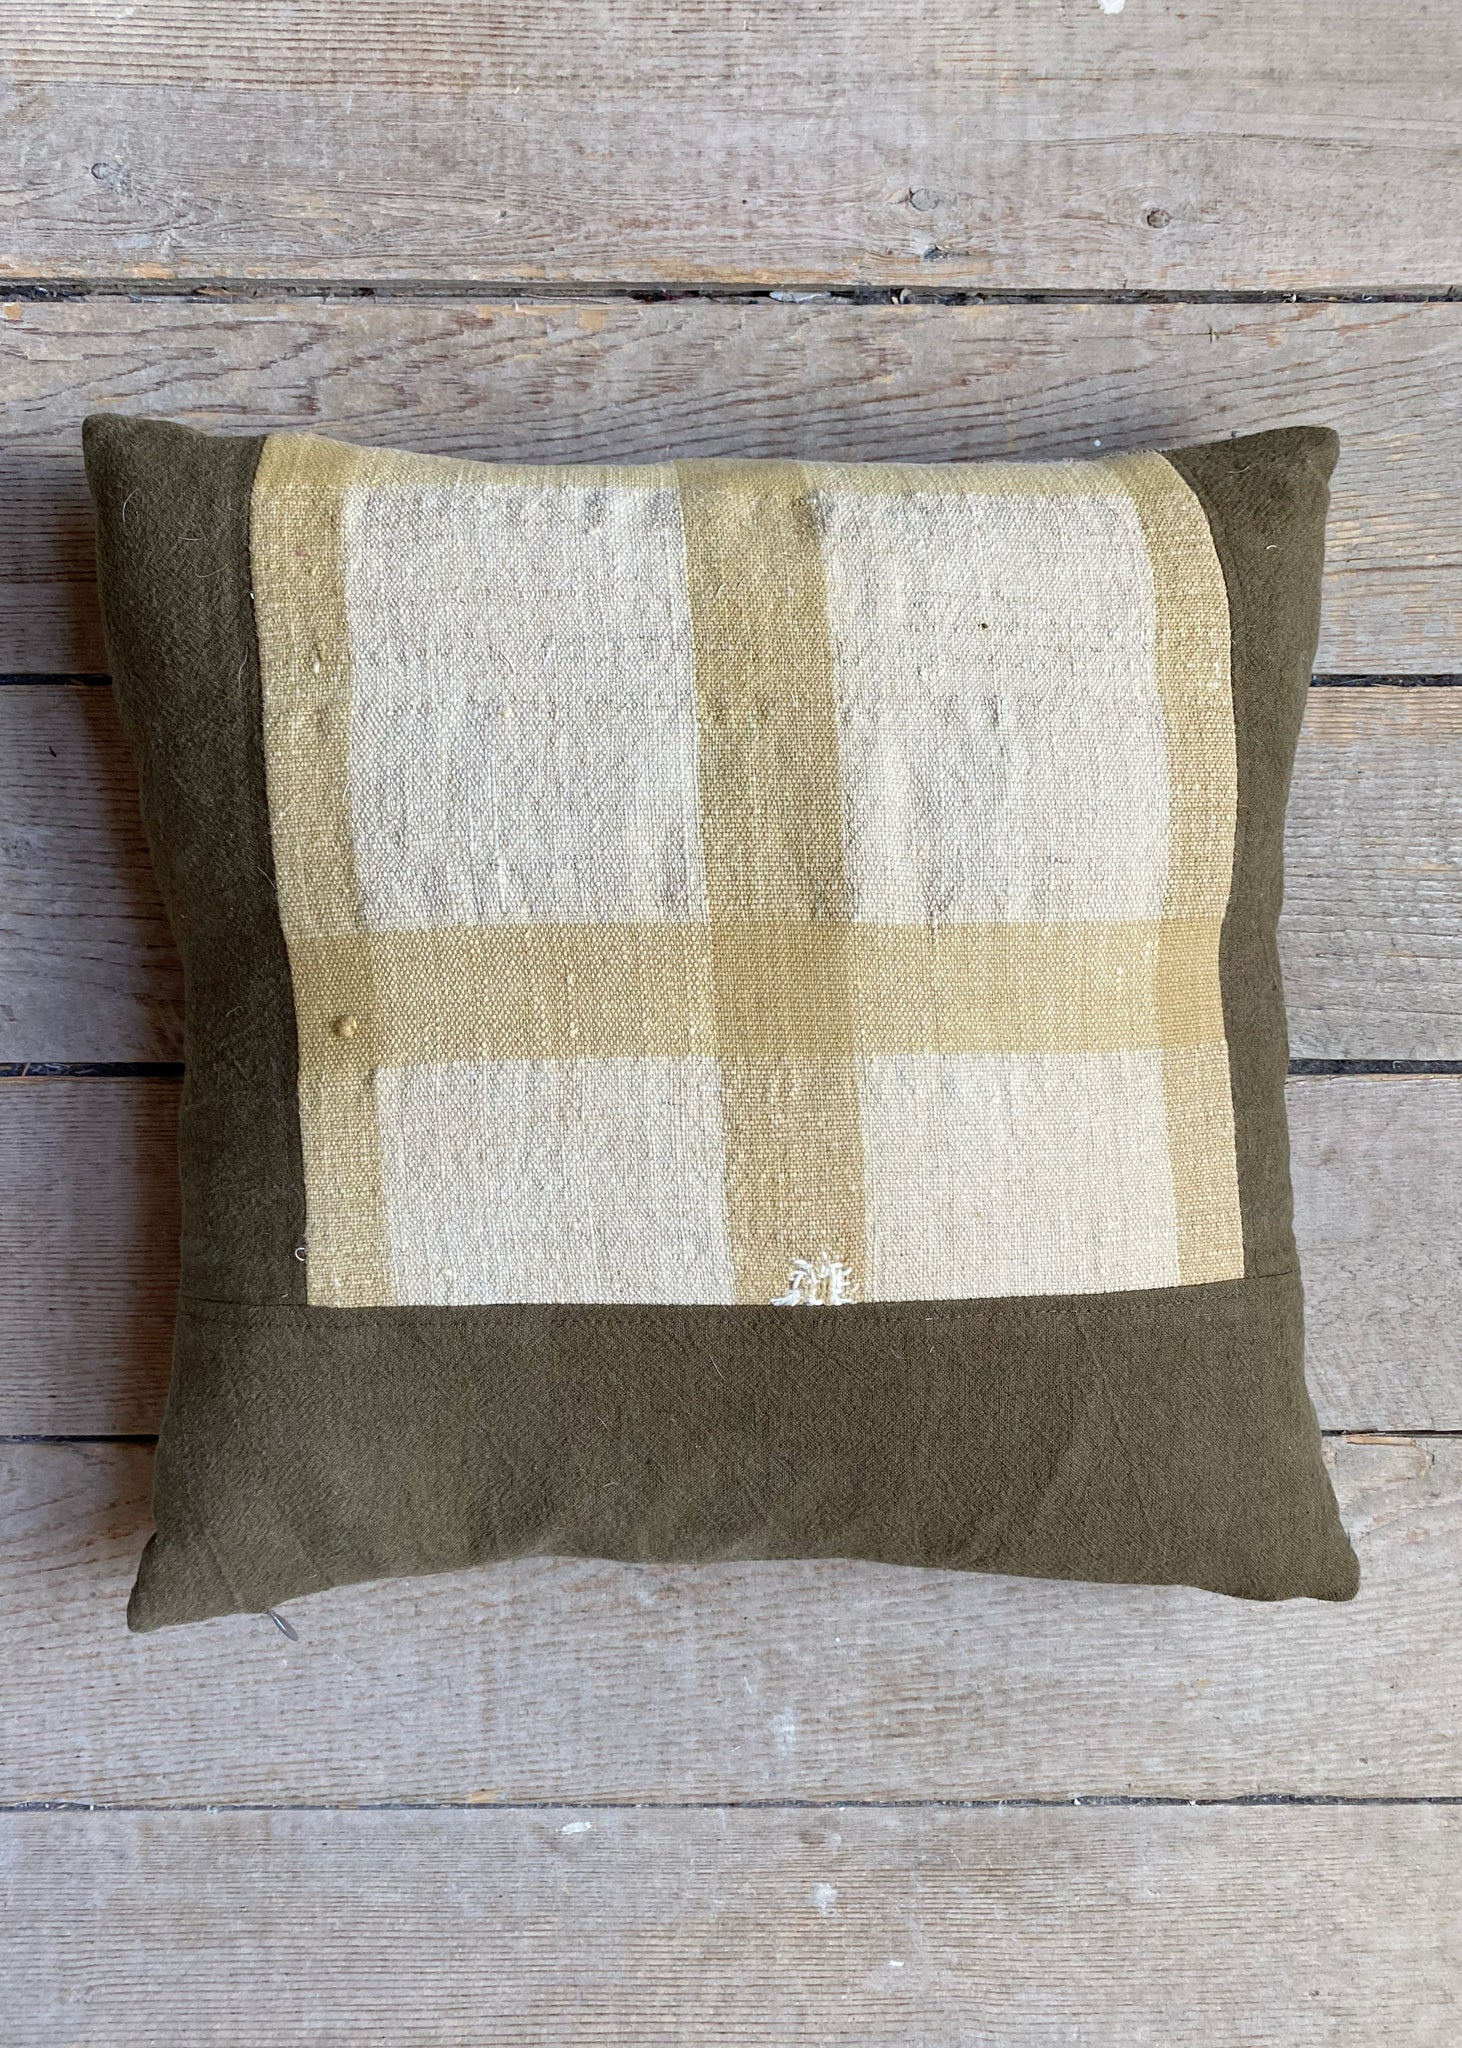 portuguese grain sack patched pillow #6